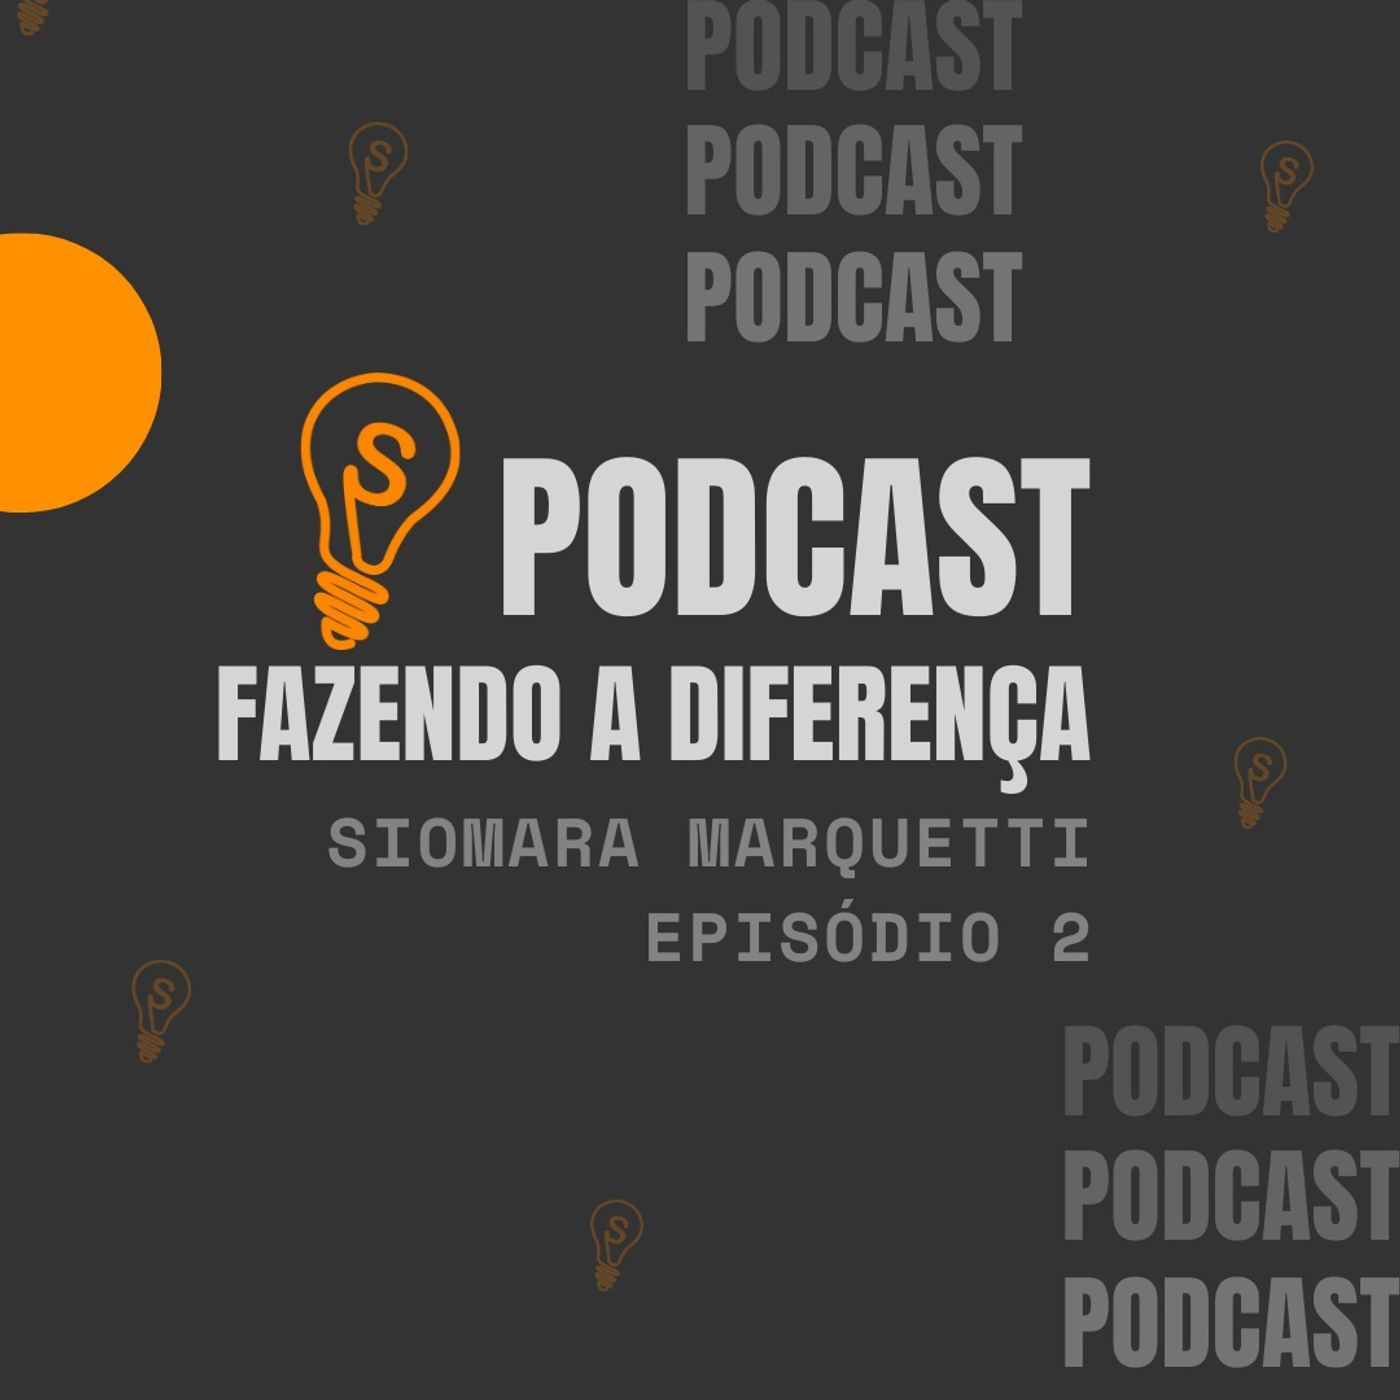 Podcast Fazendo a Diferença - Episódio 1